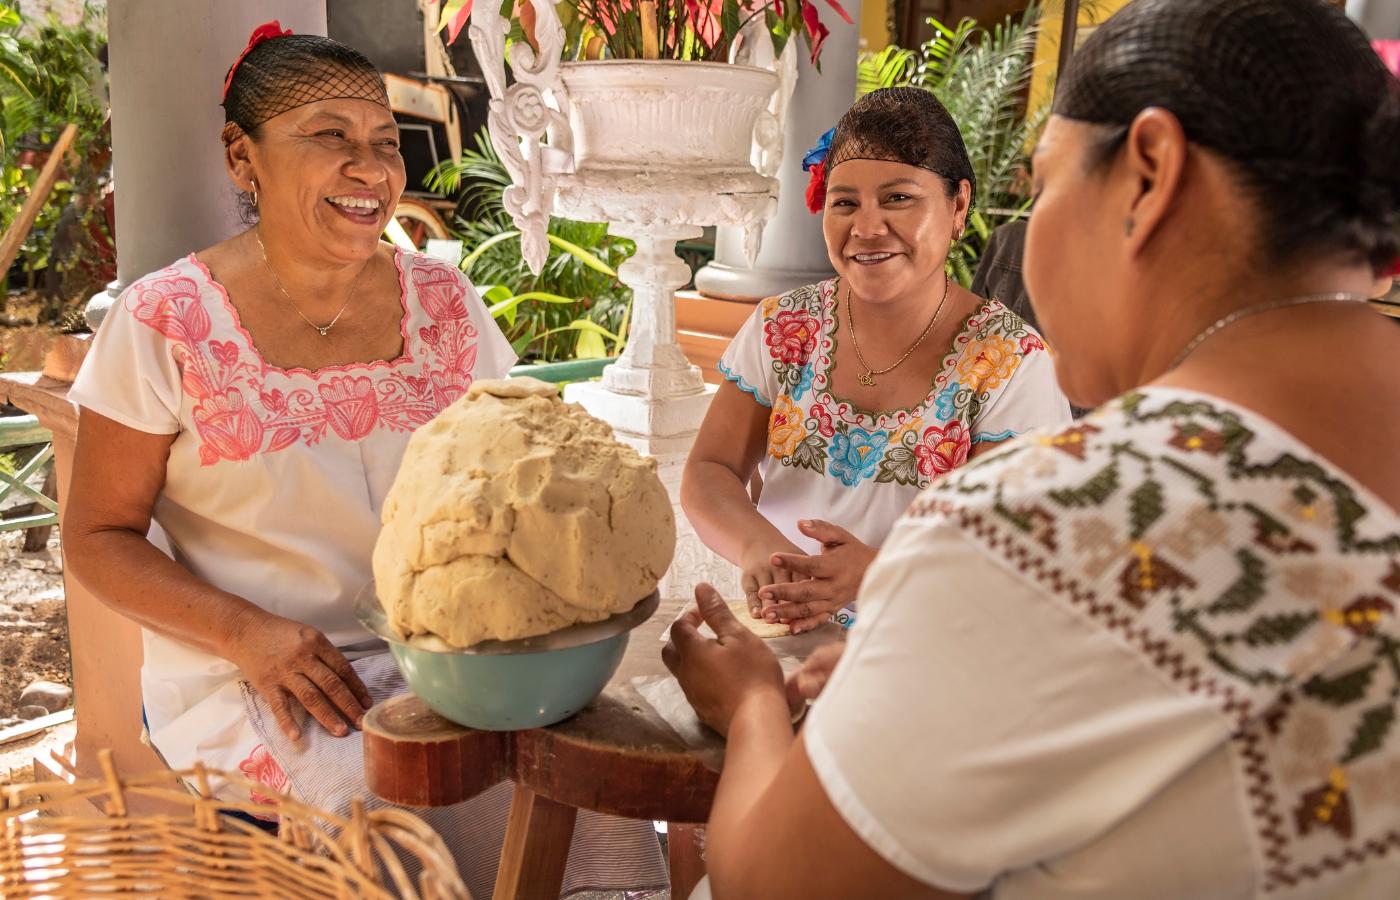 W Meksyku mieszka ponad 50 plemion, niektóre z nich stanowią same kobiety. (Fot. iStock)